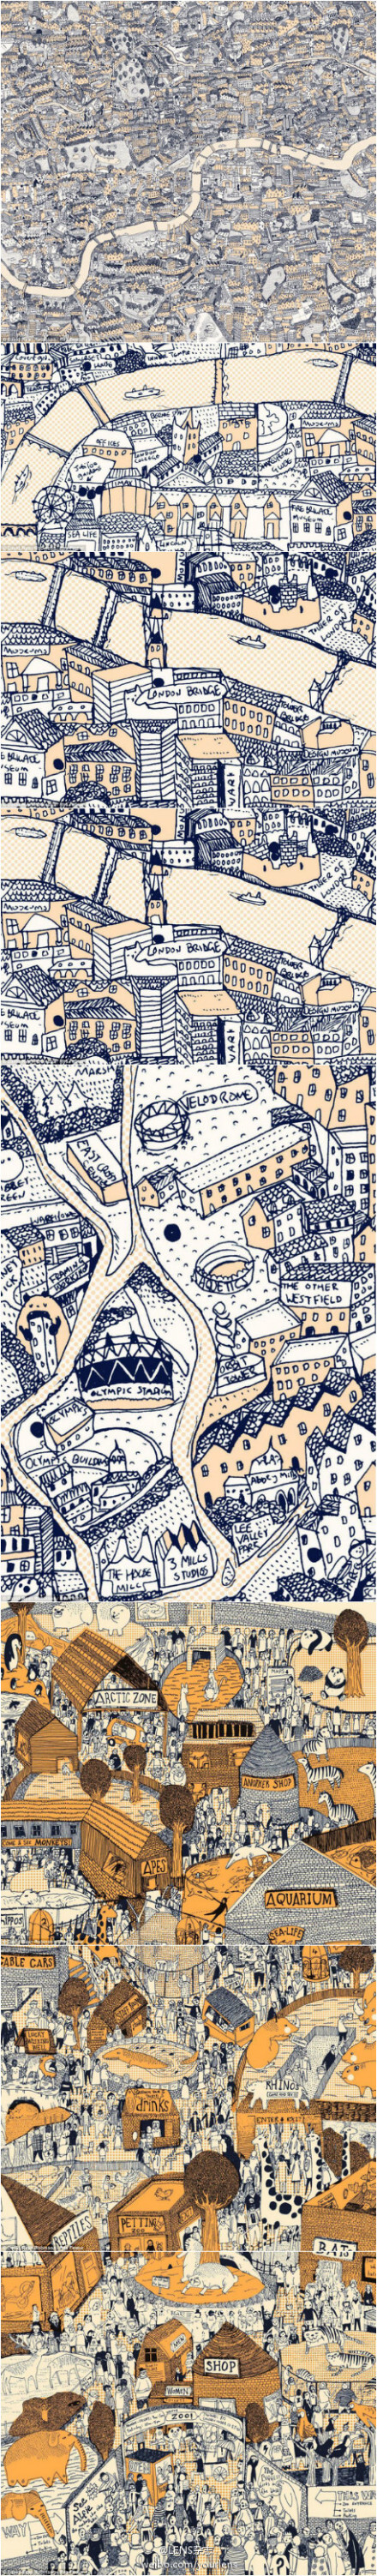 【伦敦上河图】23岁的平面设计师David Ryan Robinson在迷一次路后决定手绘一张伦敦地图，这张细致极微的全图，就是是其花费6个月时间的大作。